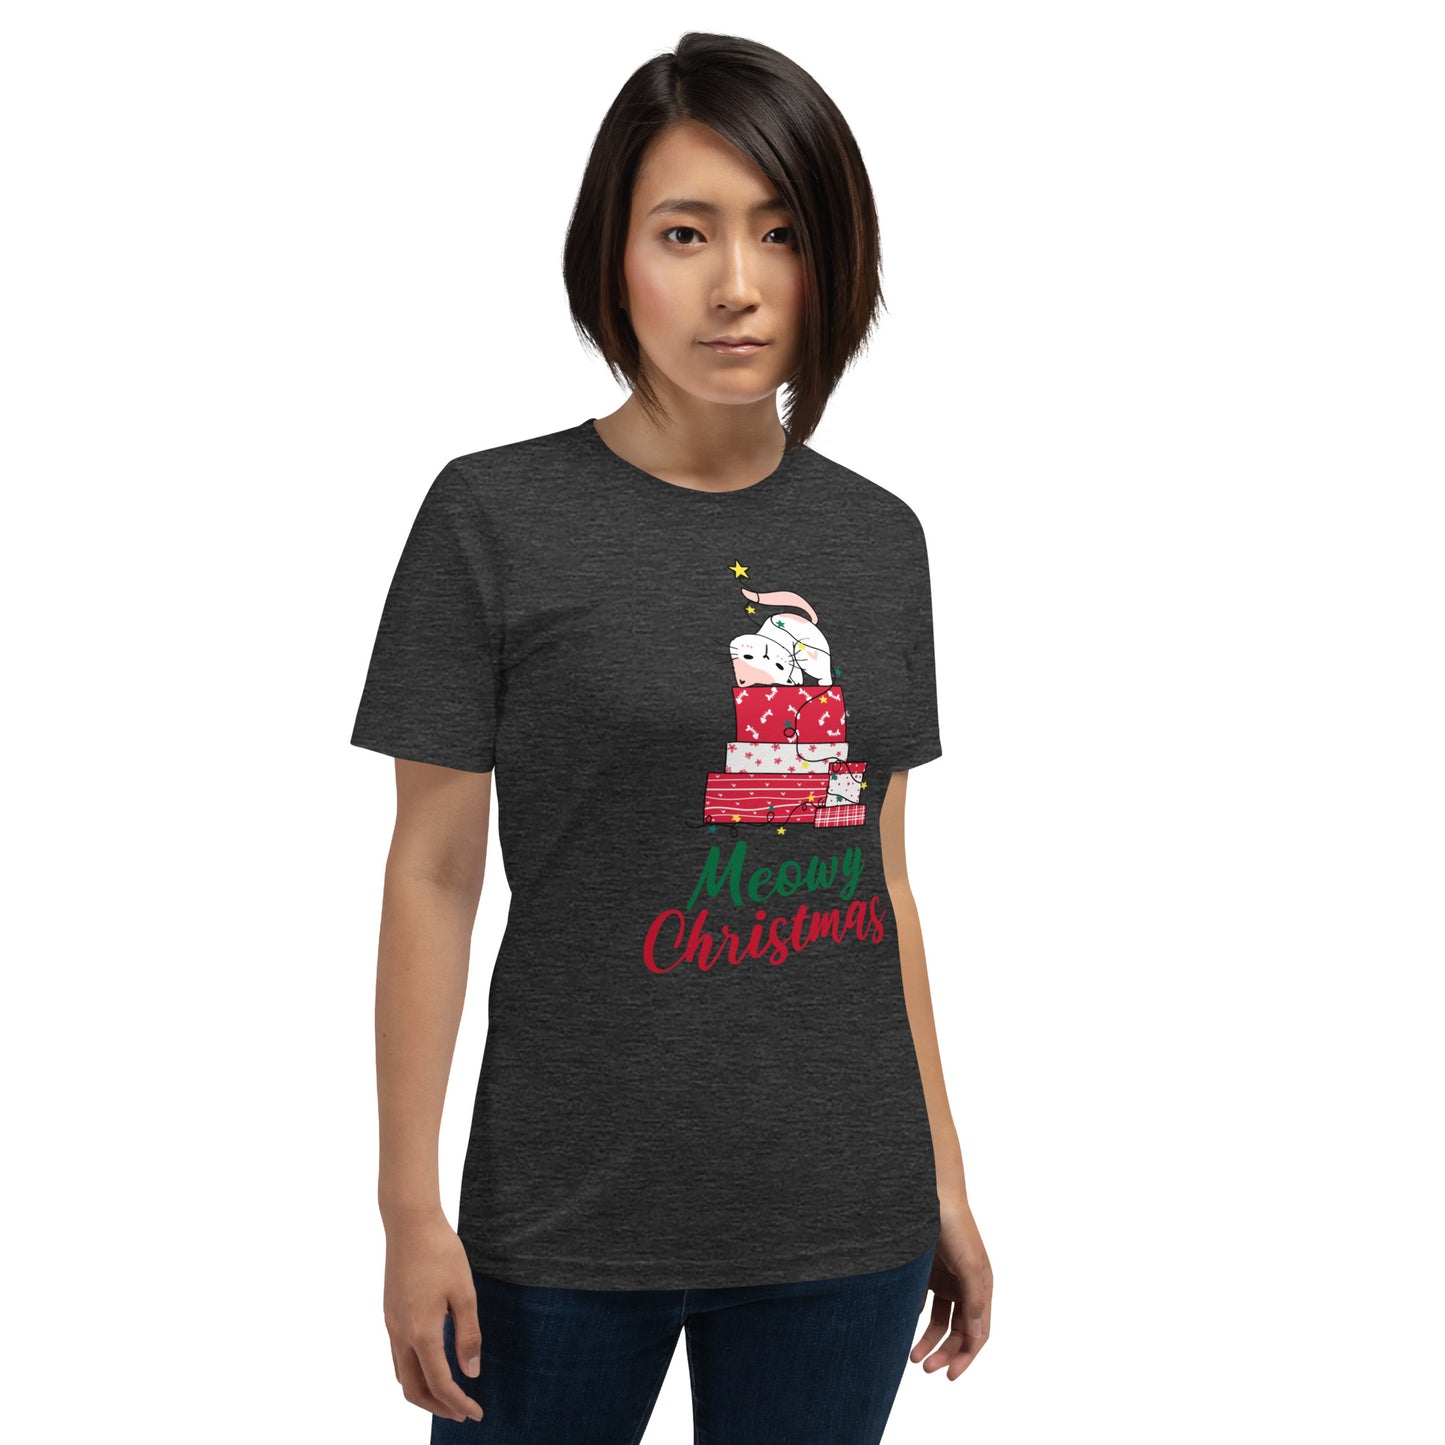 Meowy Christmas Tree Shirt - Unisex